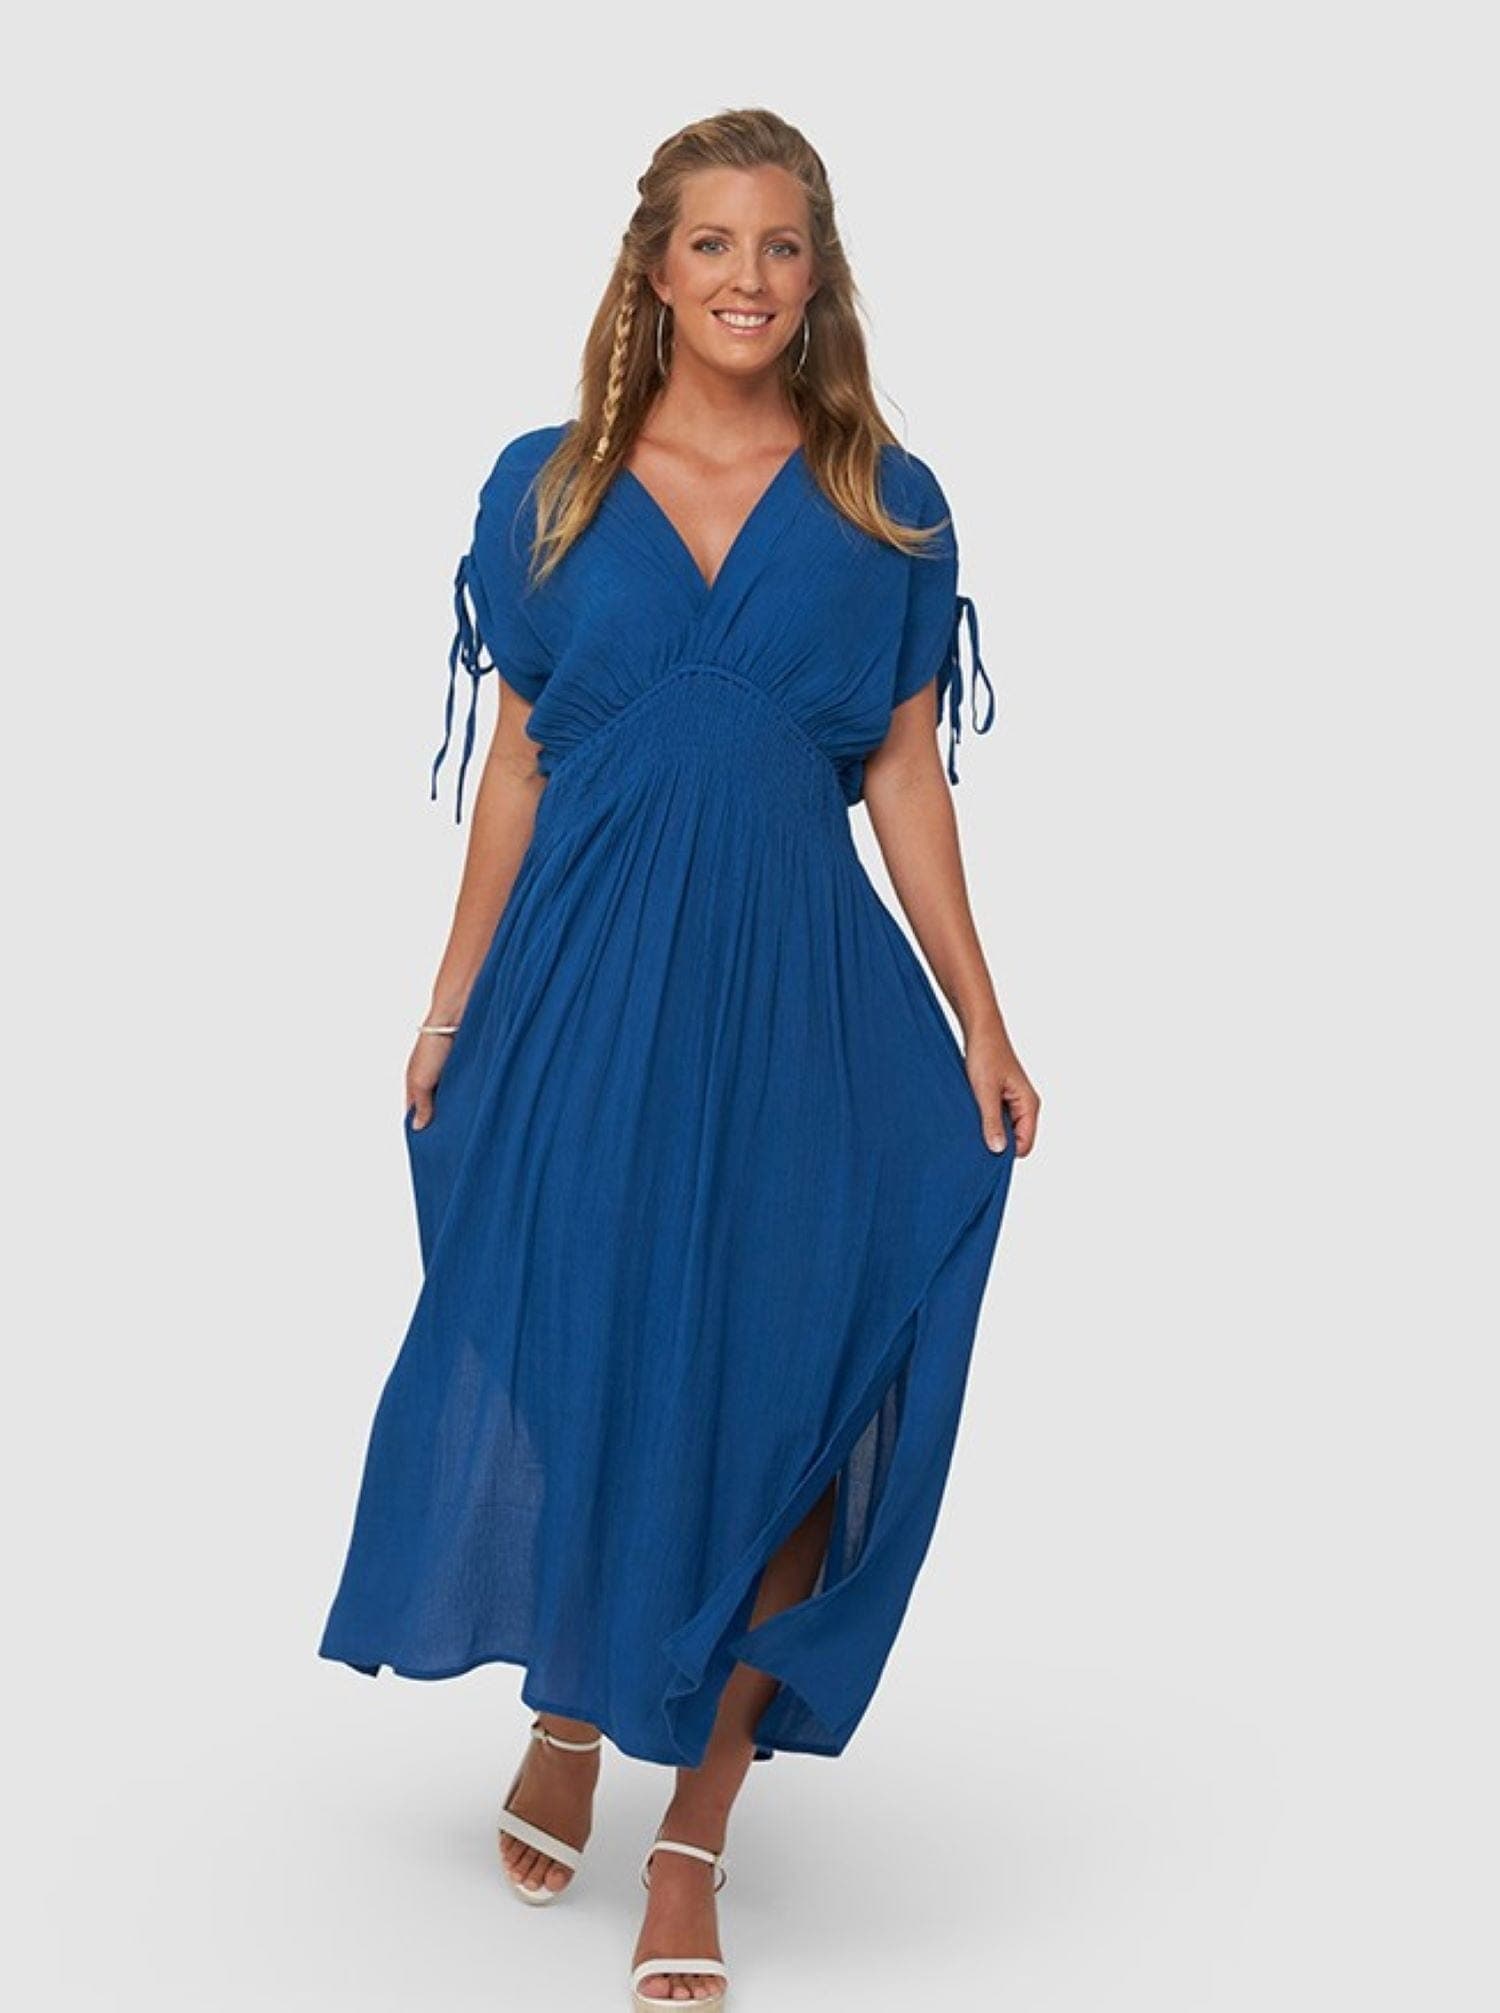 Women's V-neck Dress, Dark Blue Slit Dress for Female – KAJA Clothing